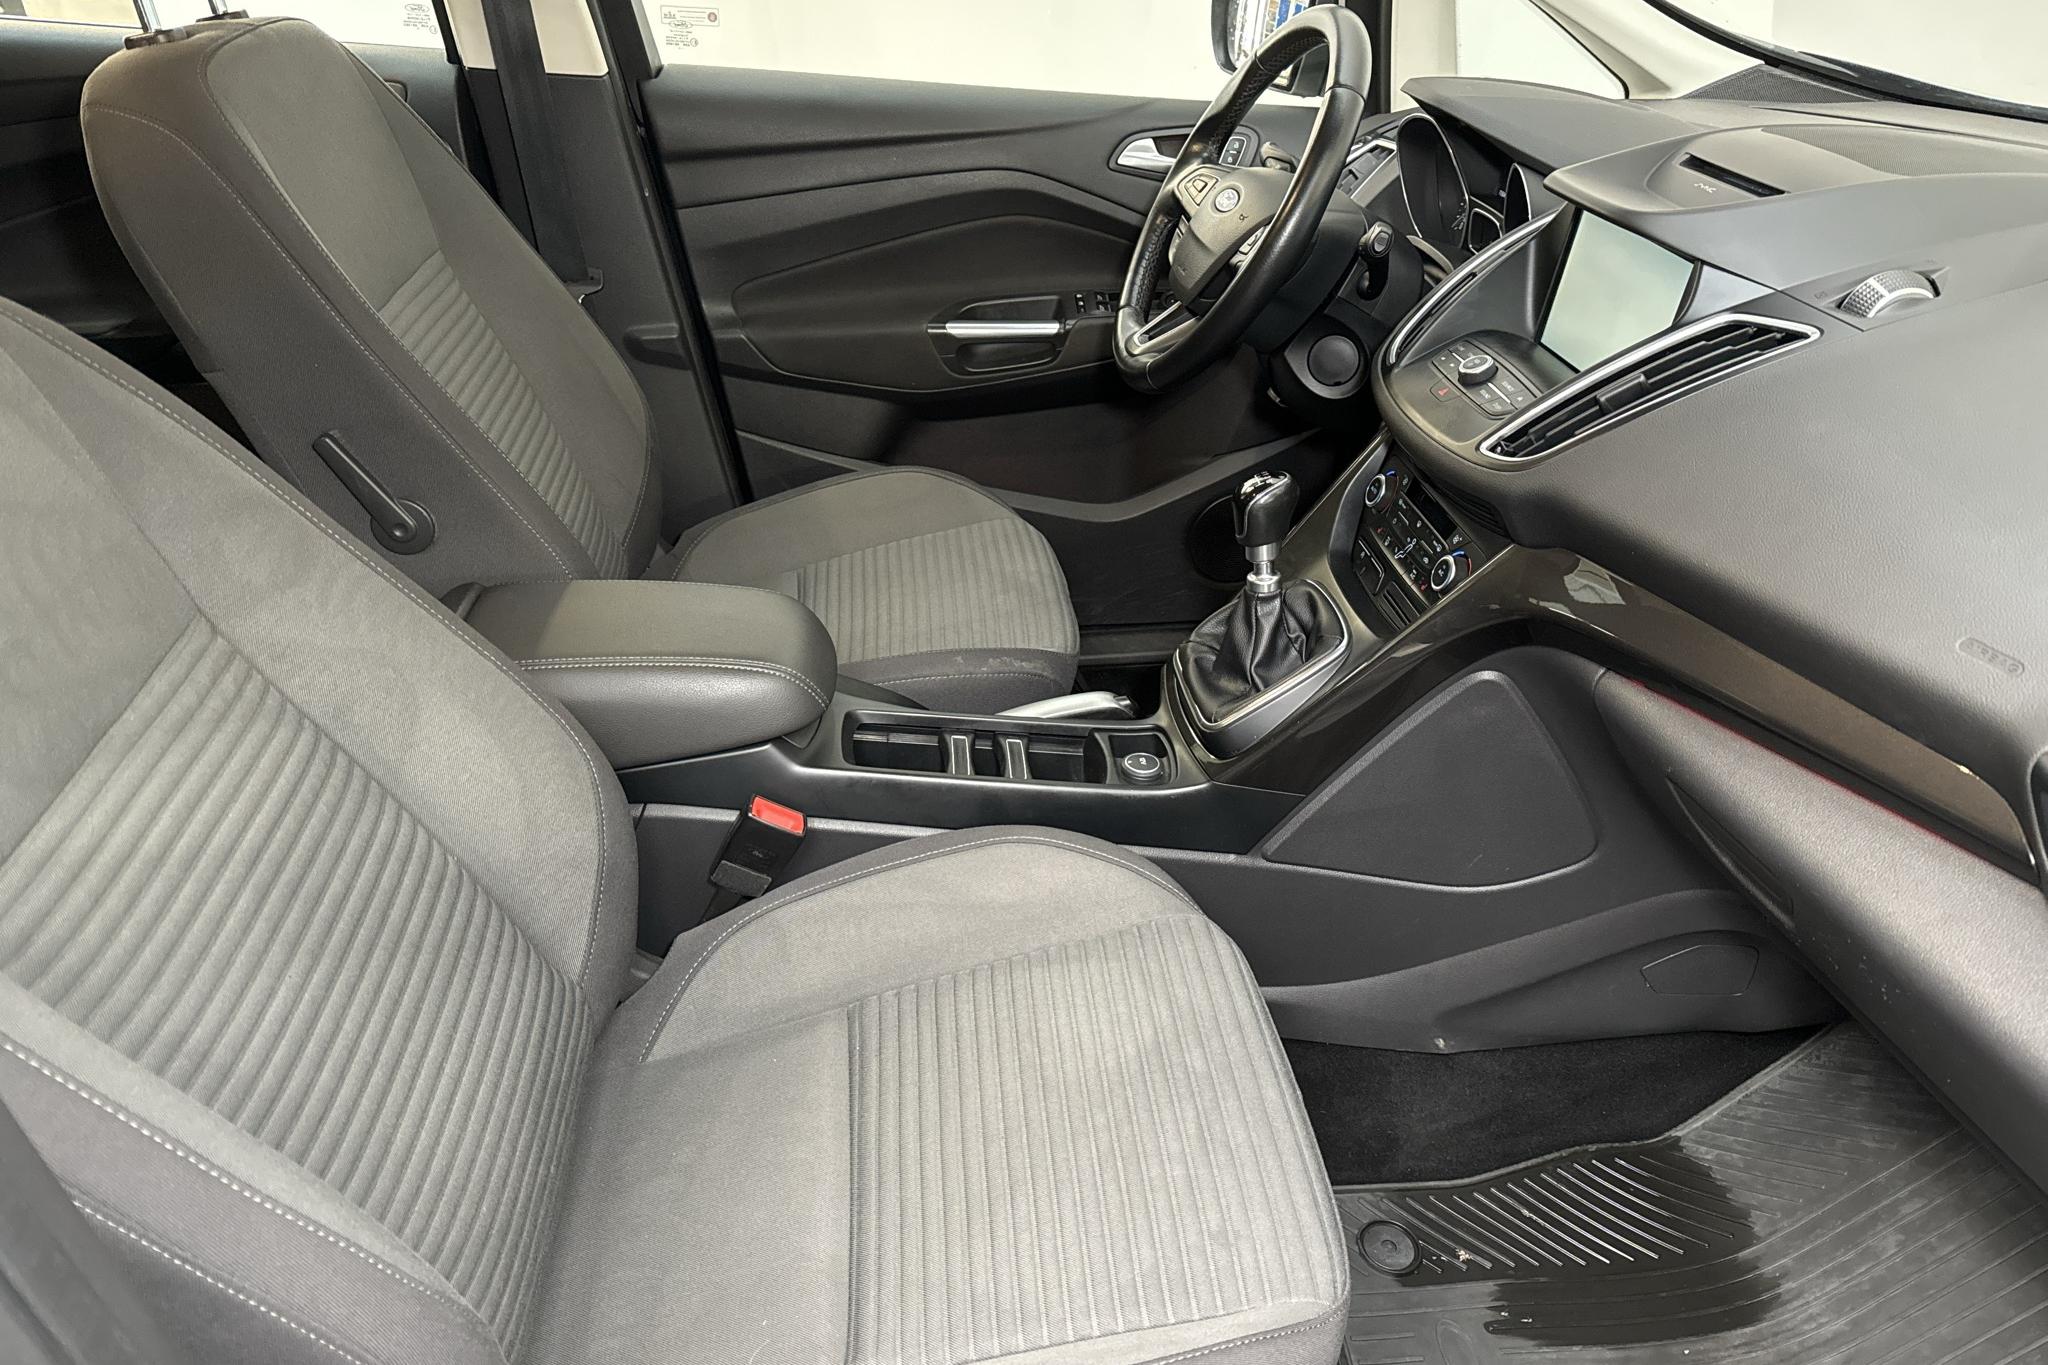 Ford C-MAX 1.0 Ecoboost (125hk) - 115 040 km - Manual - black - 2015